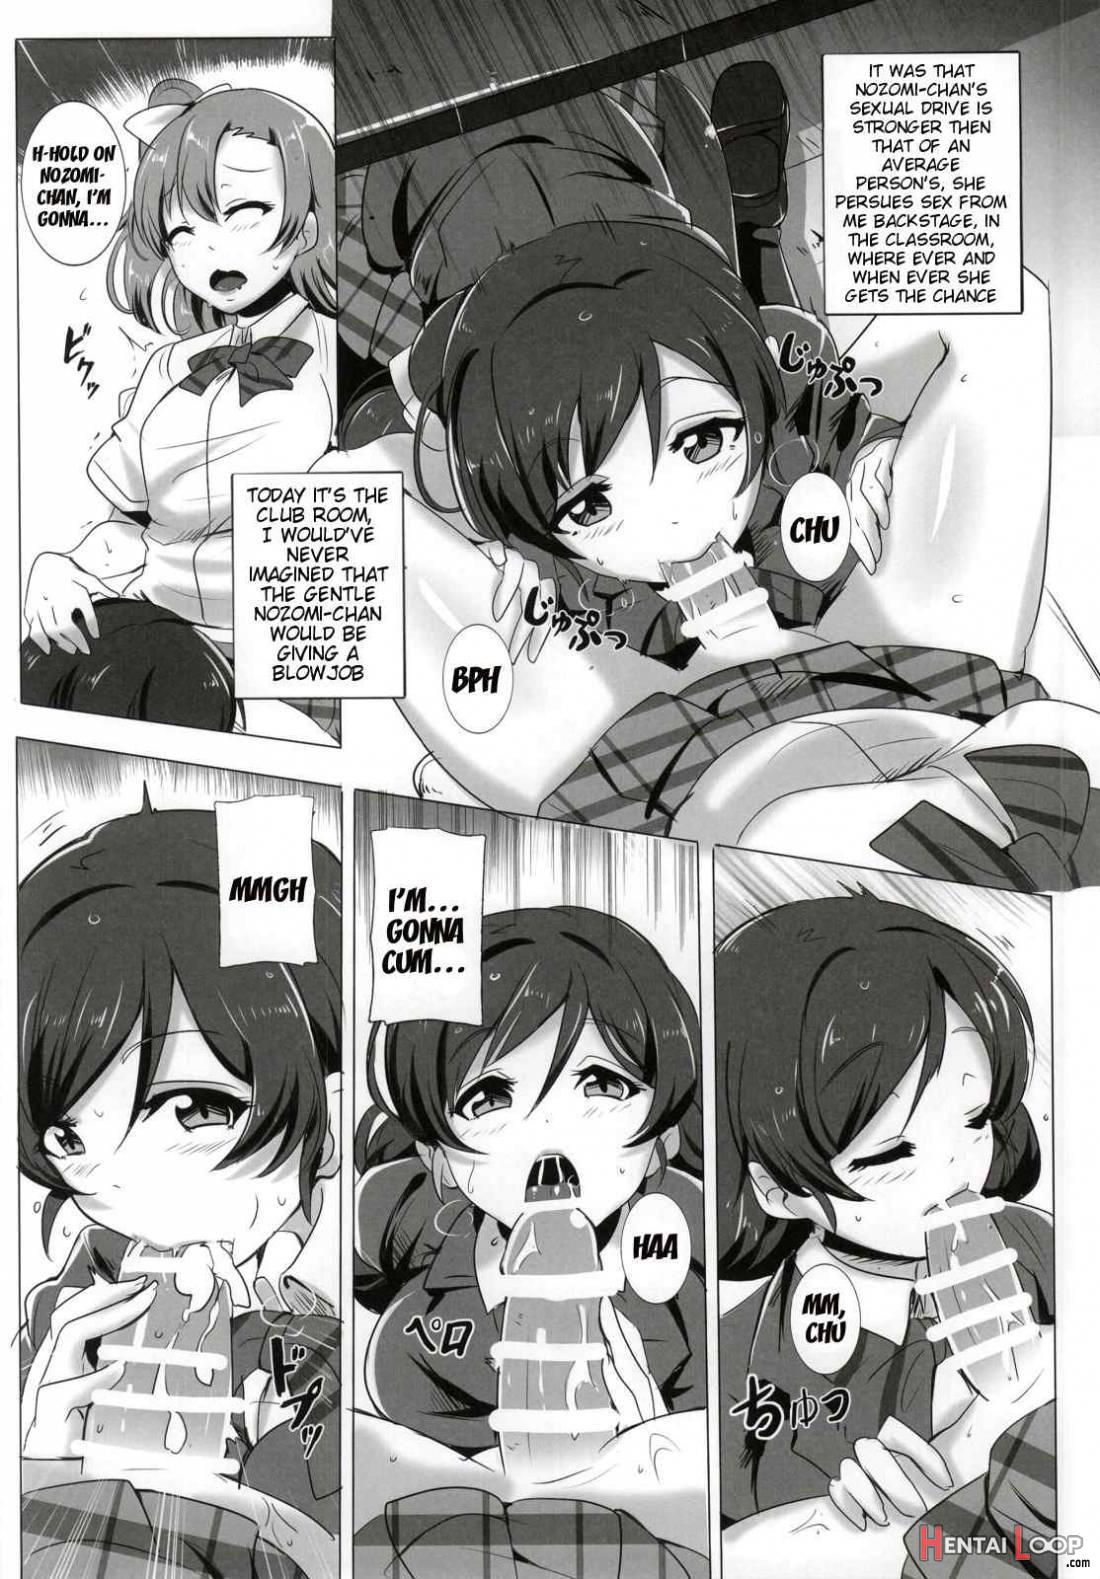 Honoka and Nozomi’s Sex Life page 3